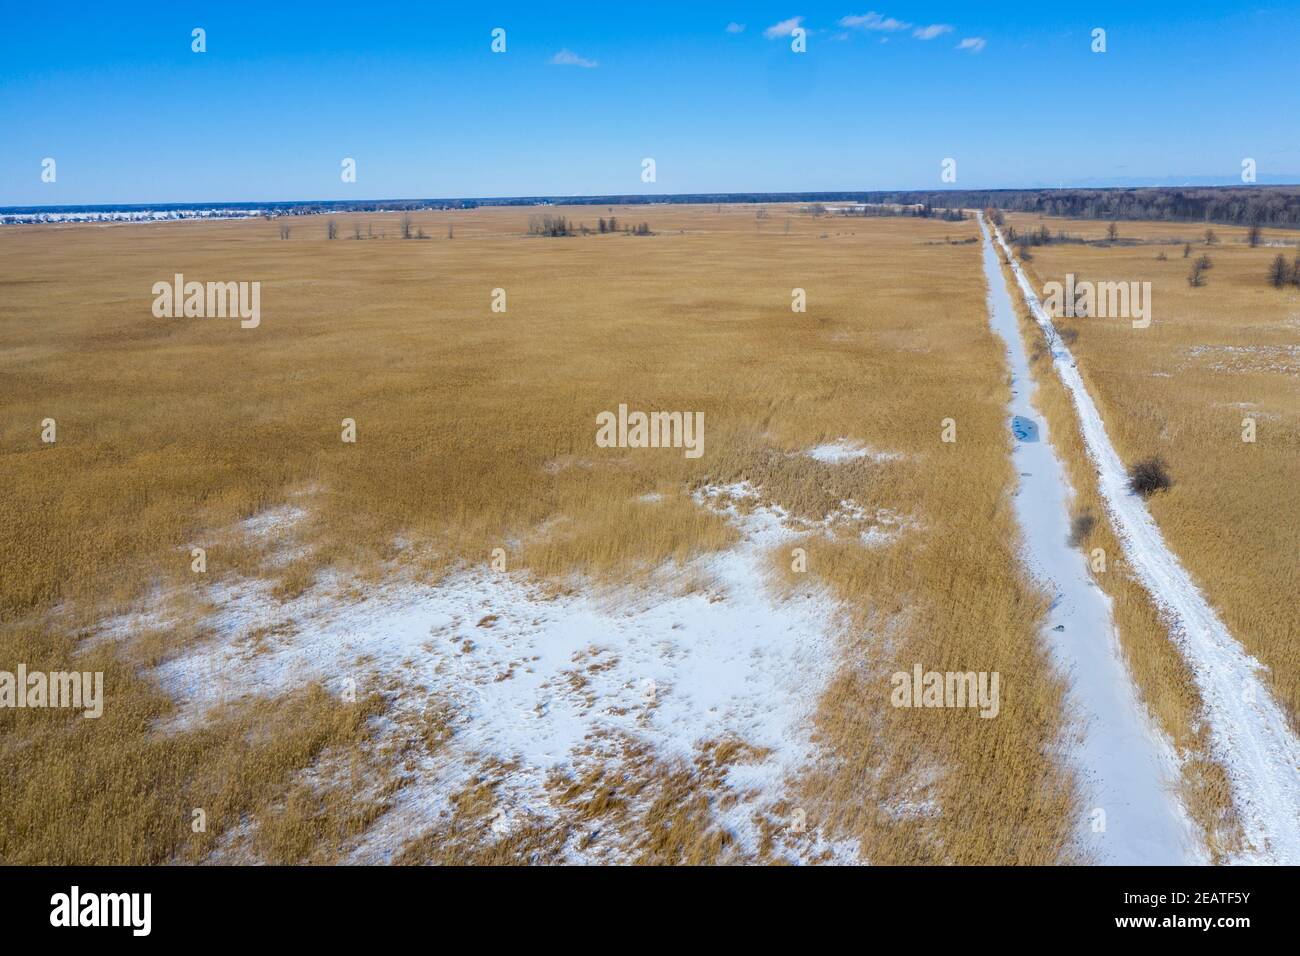 Algonac, Michigan - St. John's Marsh, eine nasse Prärie mit Wander- und Kanuwegen. Einheimische Rohrkegel und andere Pflanzen wurden weitgehend durch Th ersetzt Stockfoto